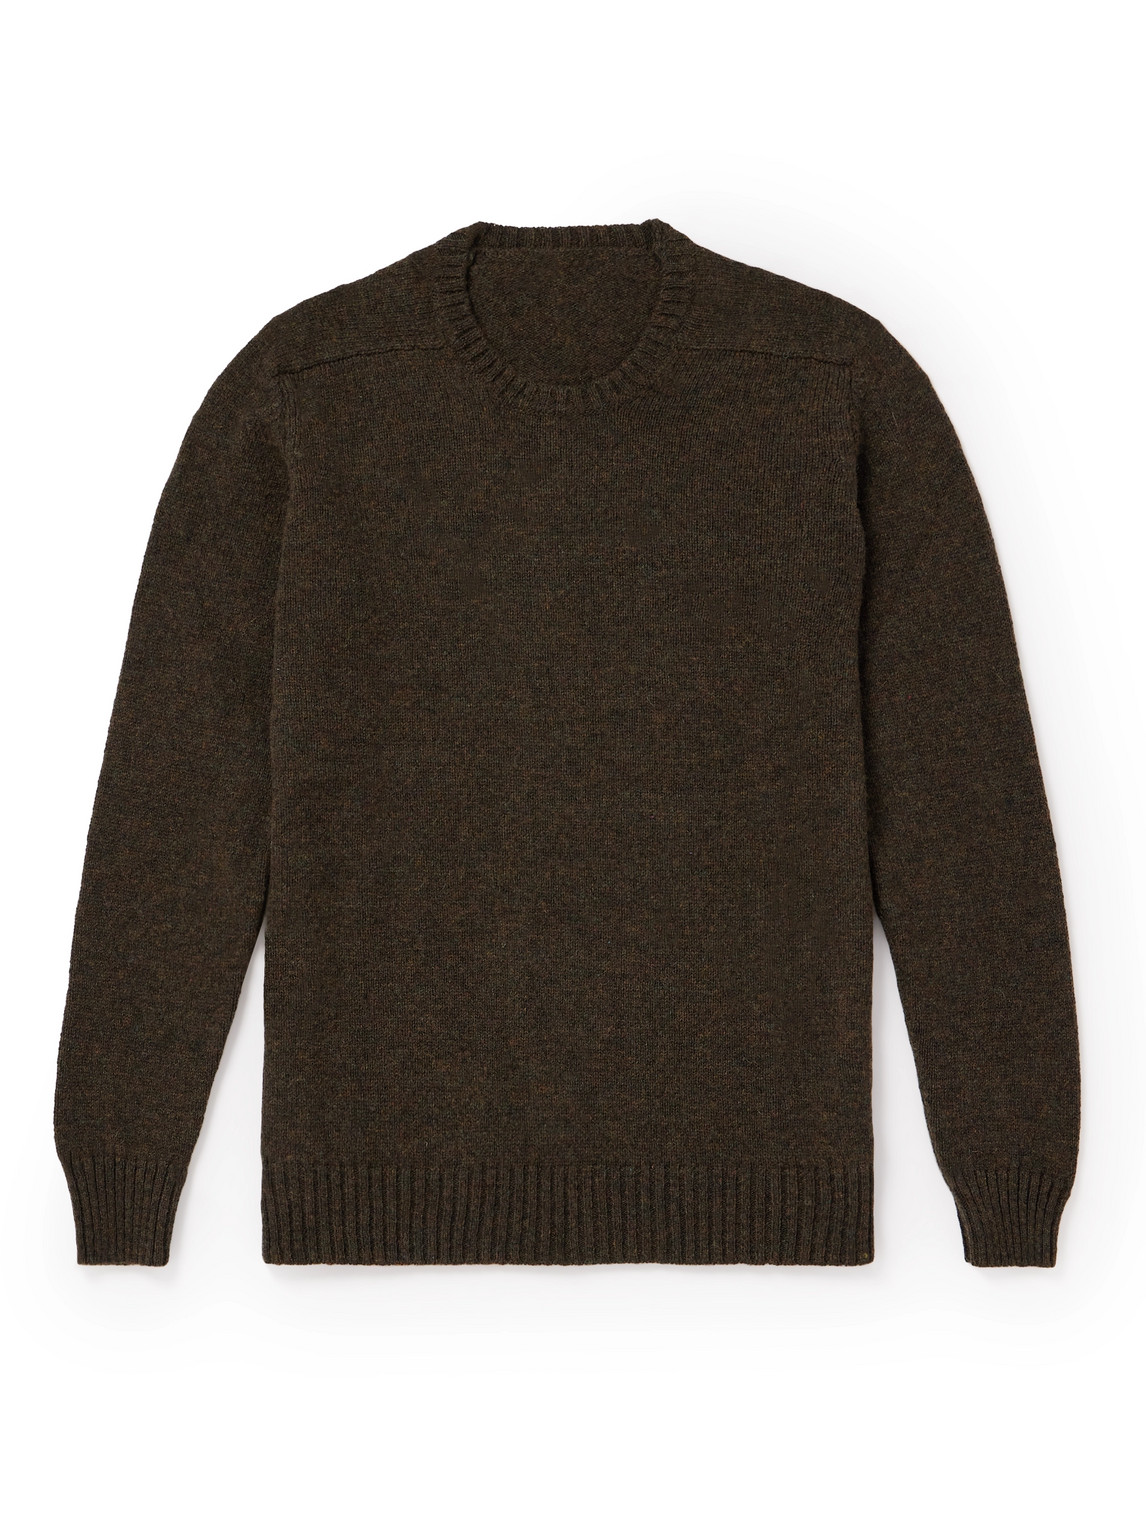 Anderson & Sheppard Shetland Wool Sweater In Brown